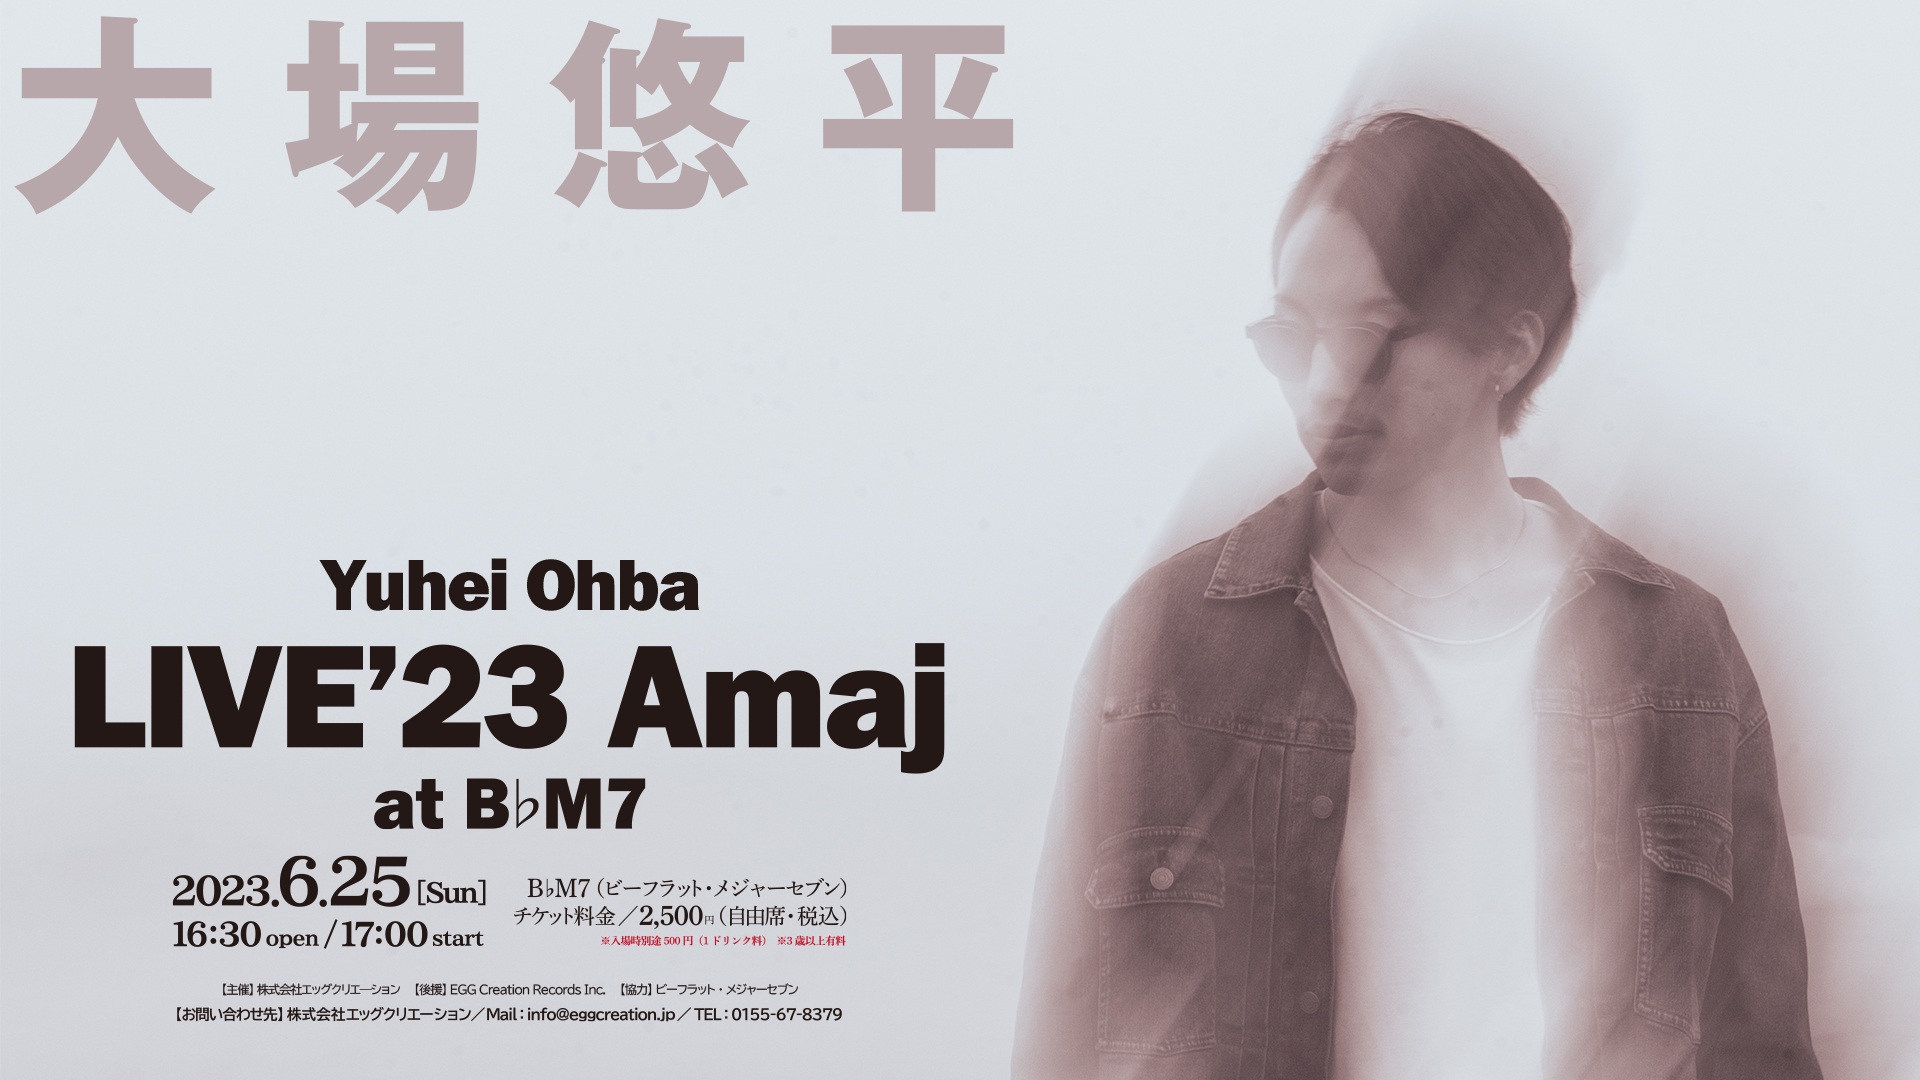 大場悠平 LIVE '23 『Amaj』 at B♭M7